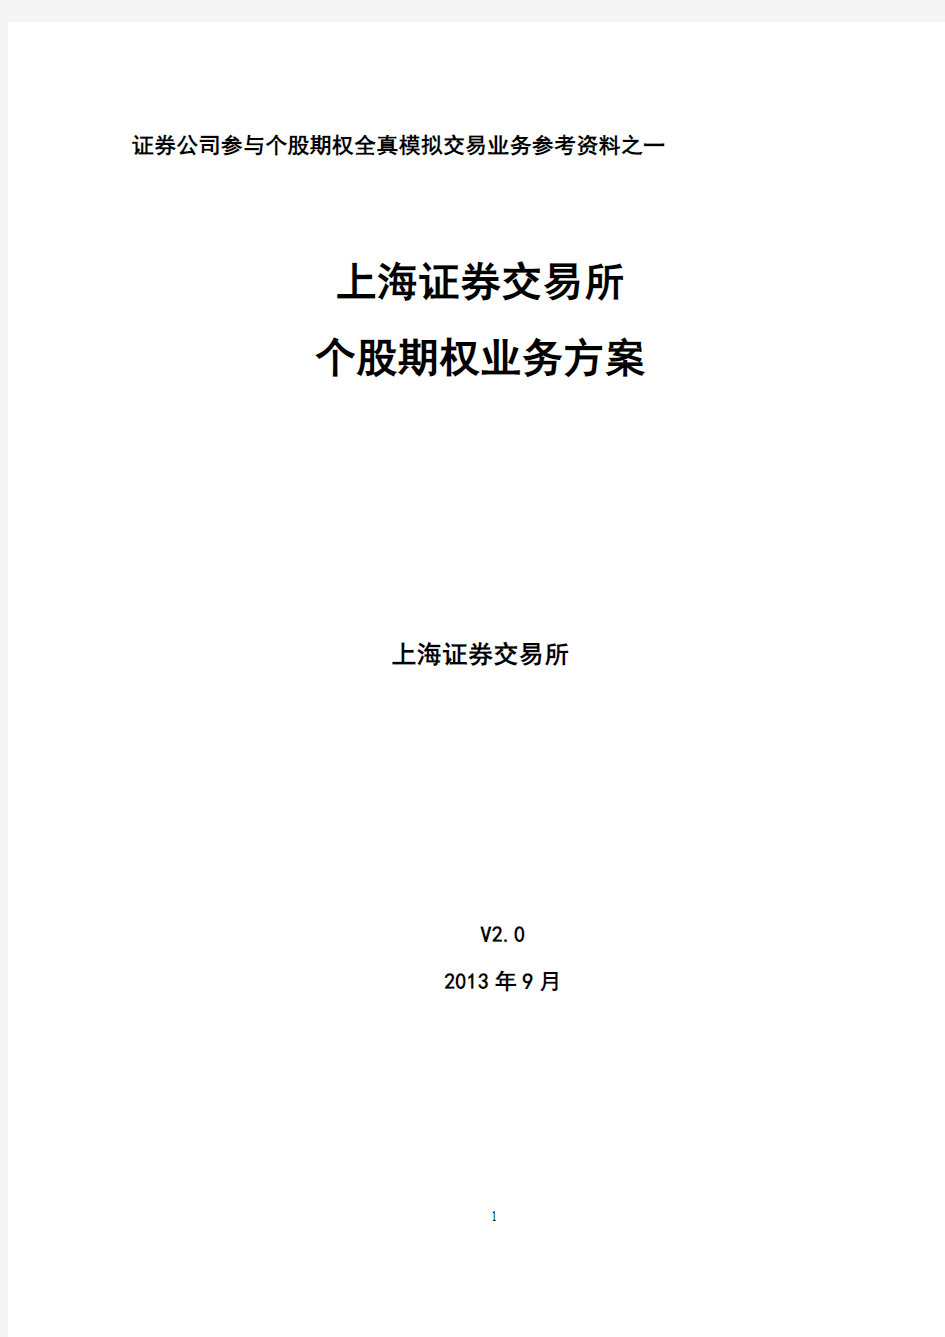 01 上海证券交易所个股期权业务方案(第二版)(20130918)